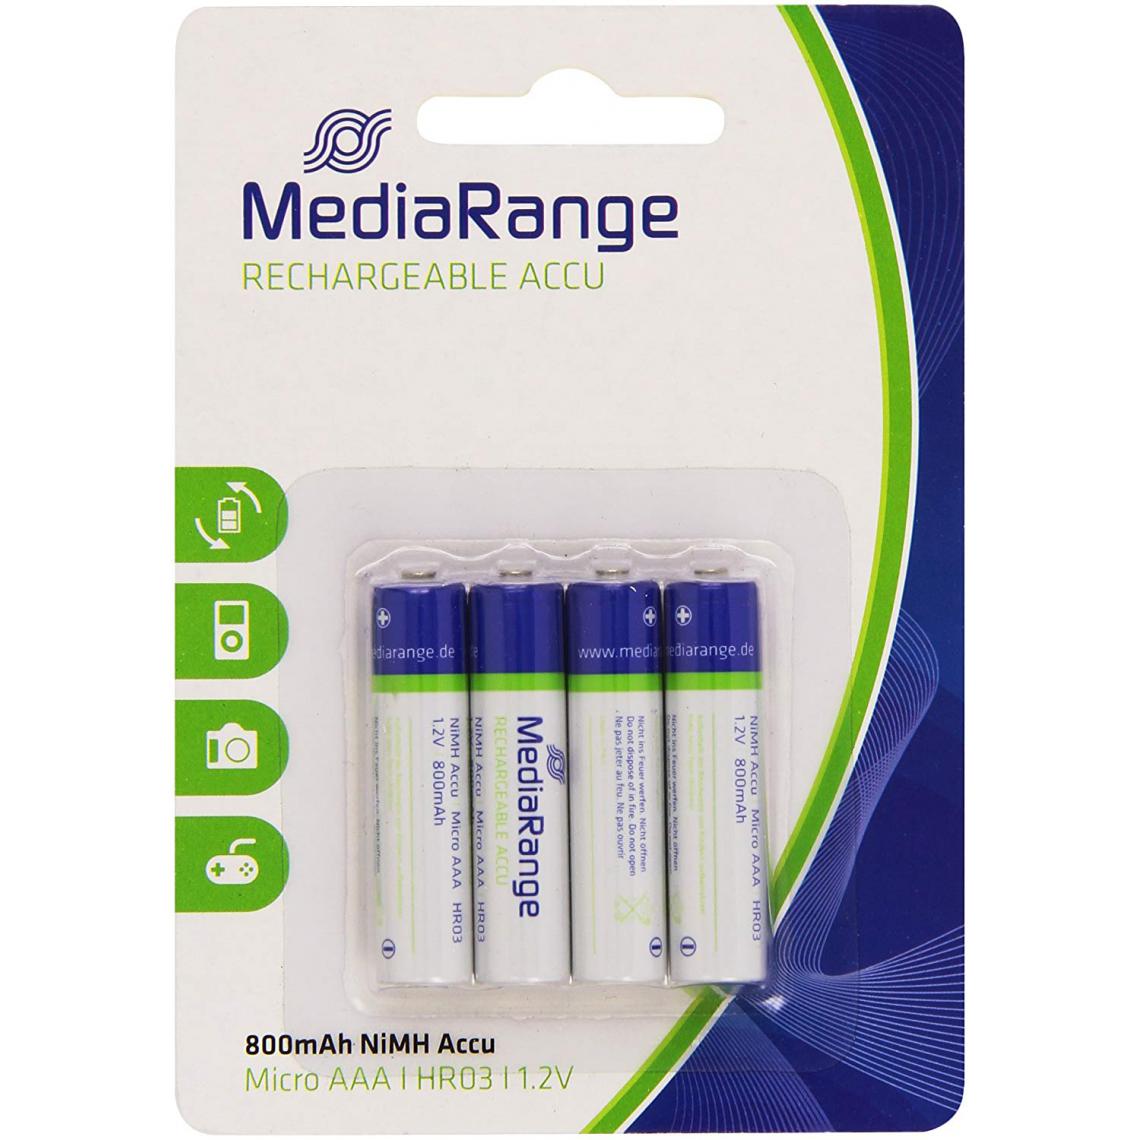 Mediarange - Pack de 4 piles rechargeable Mediarange NiMH Micro AAA HR03 1.2V - Piles spécifiques